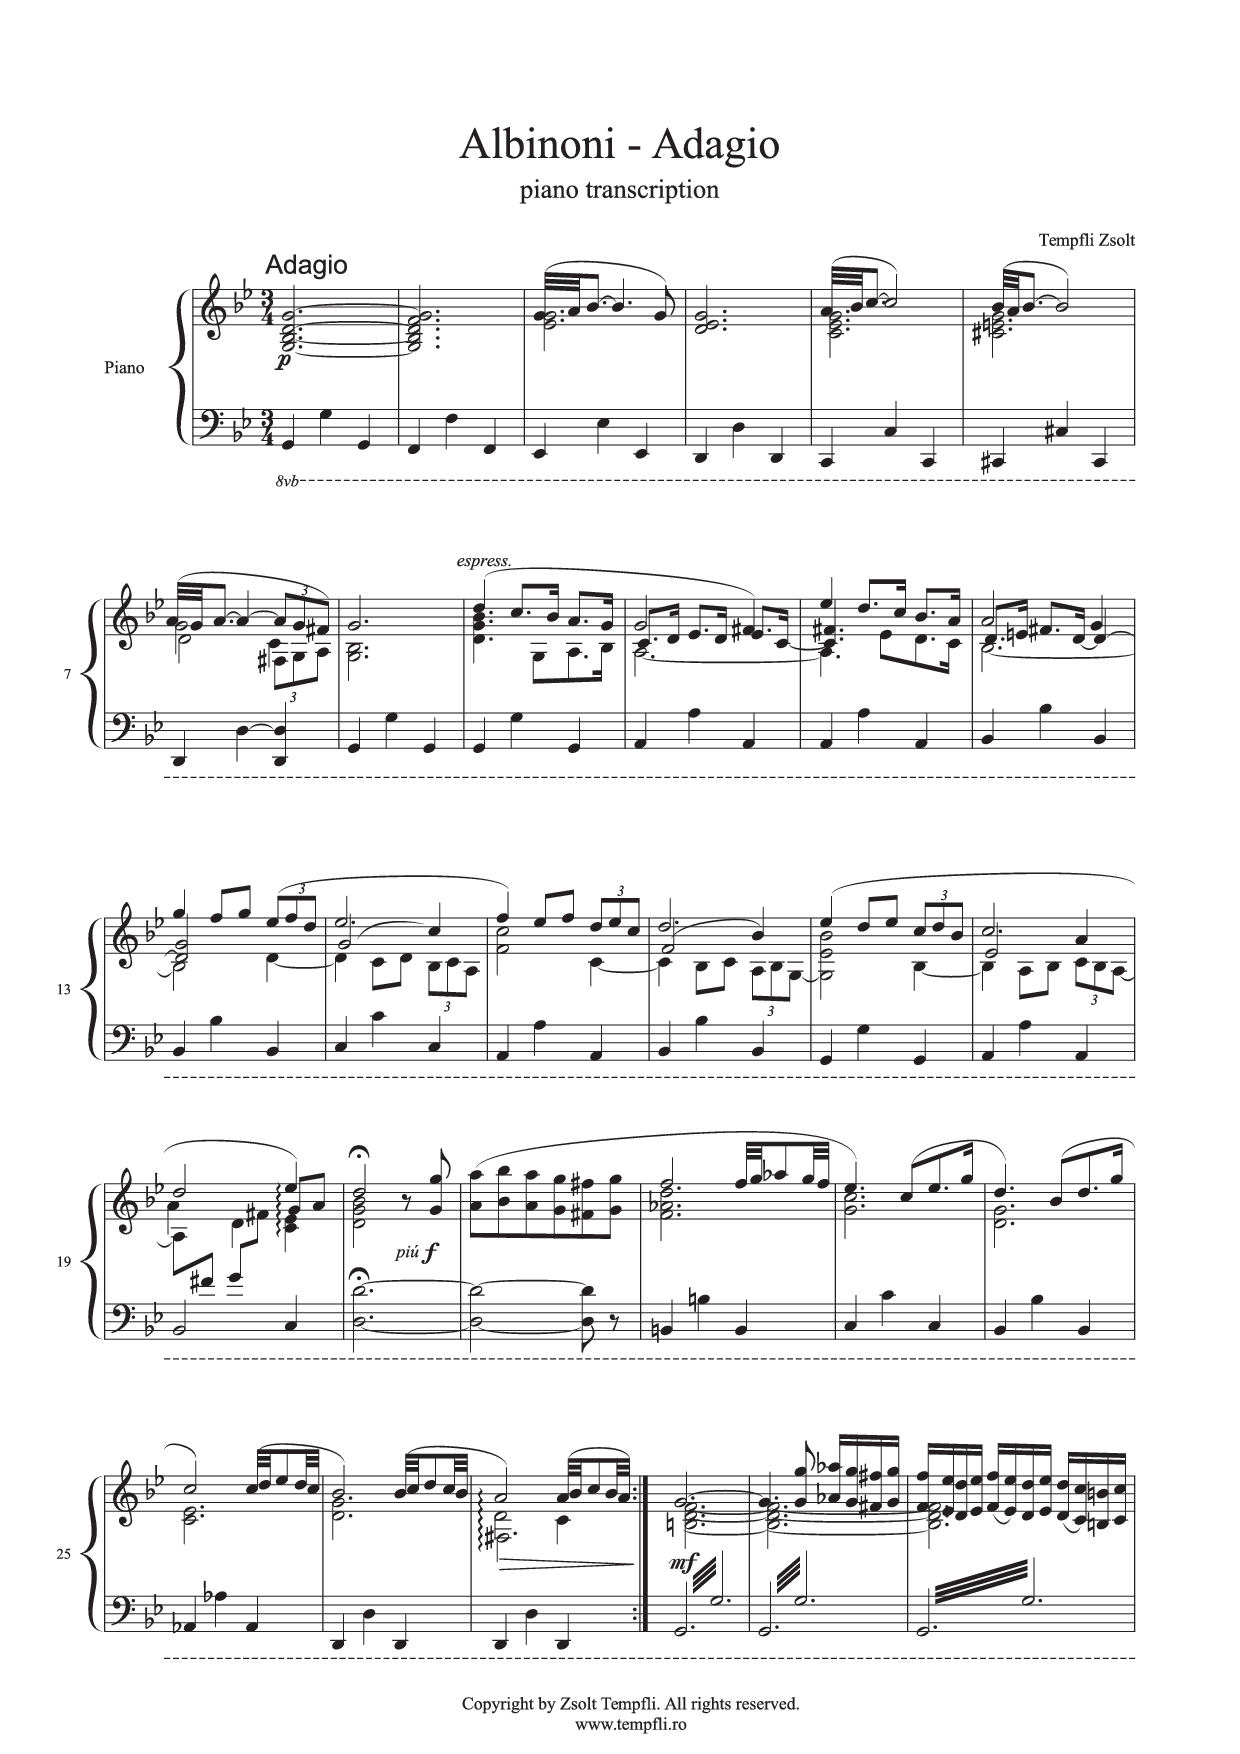 Zsolt Tempfli - Tomaso Albinoni: Adagio - transcription for piano (op. 17)